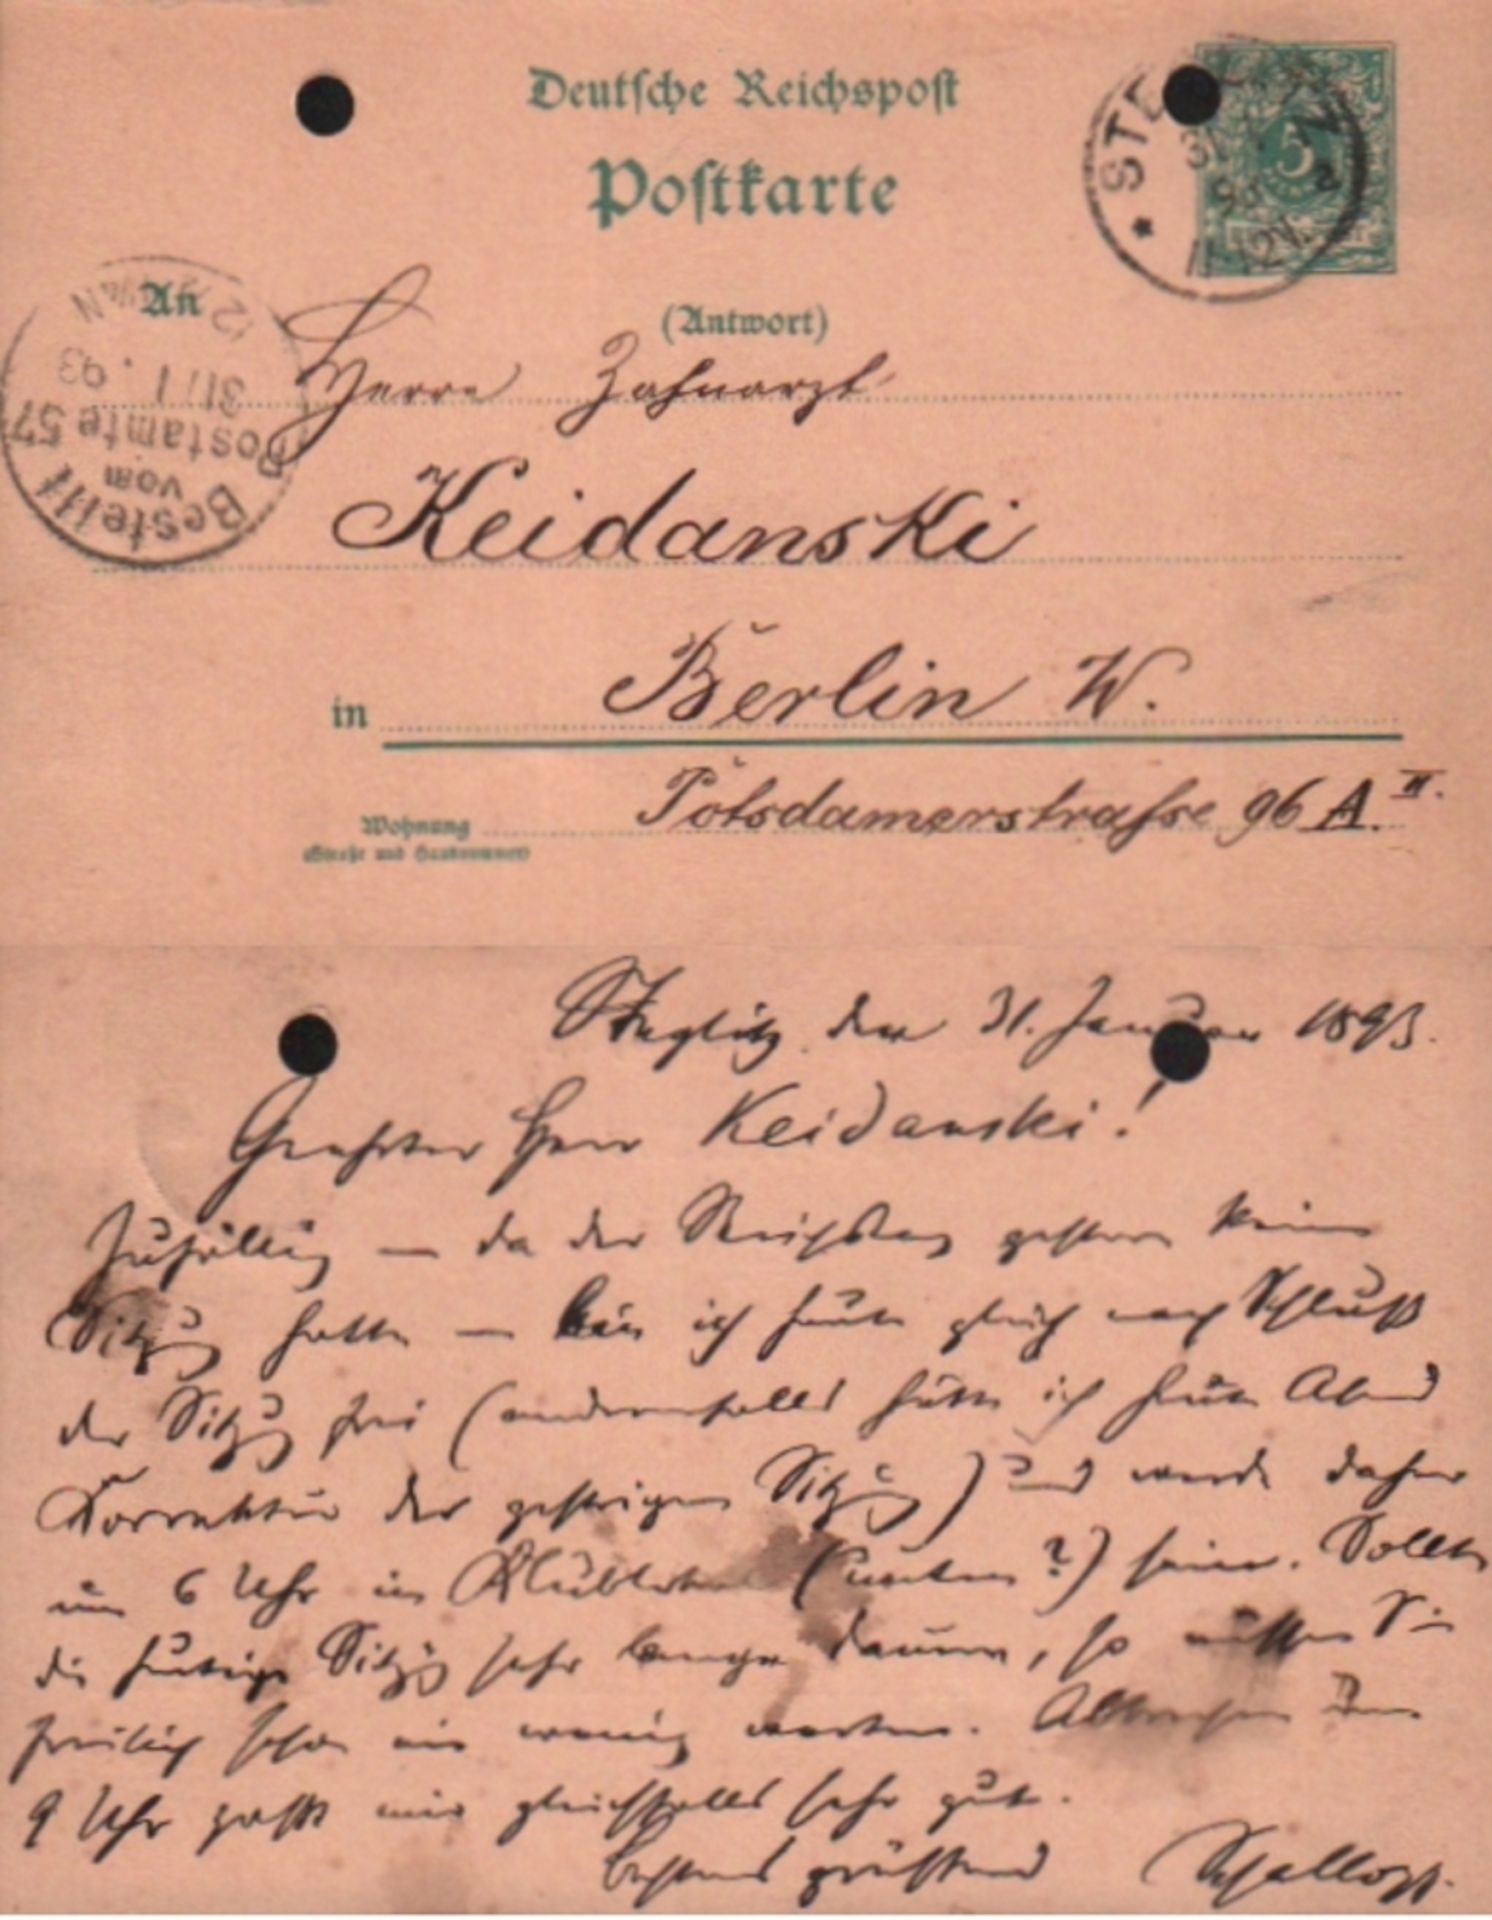 Schallopp, Emil. Postalisch gelaufene Postkarte mit eigenhändig geschriebenem Text von Emil